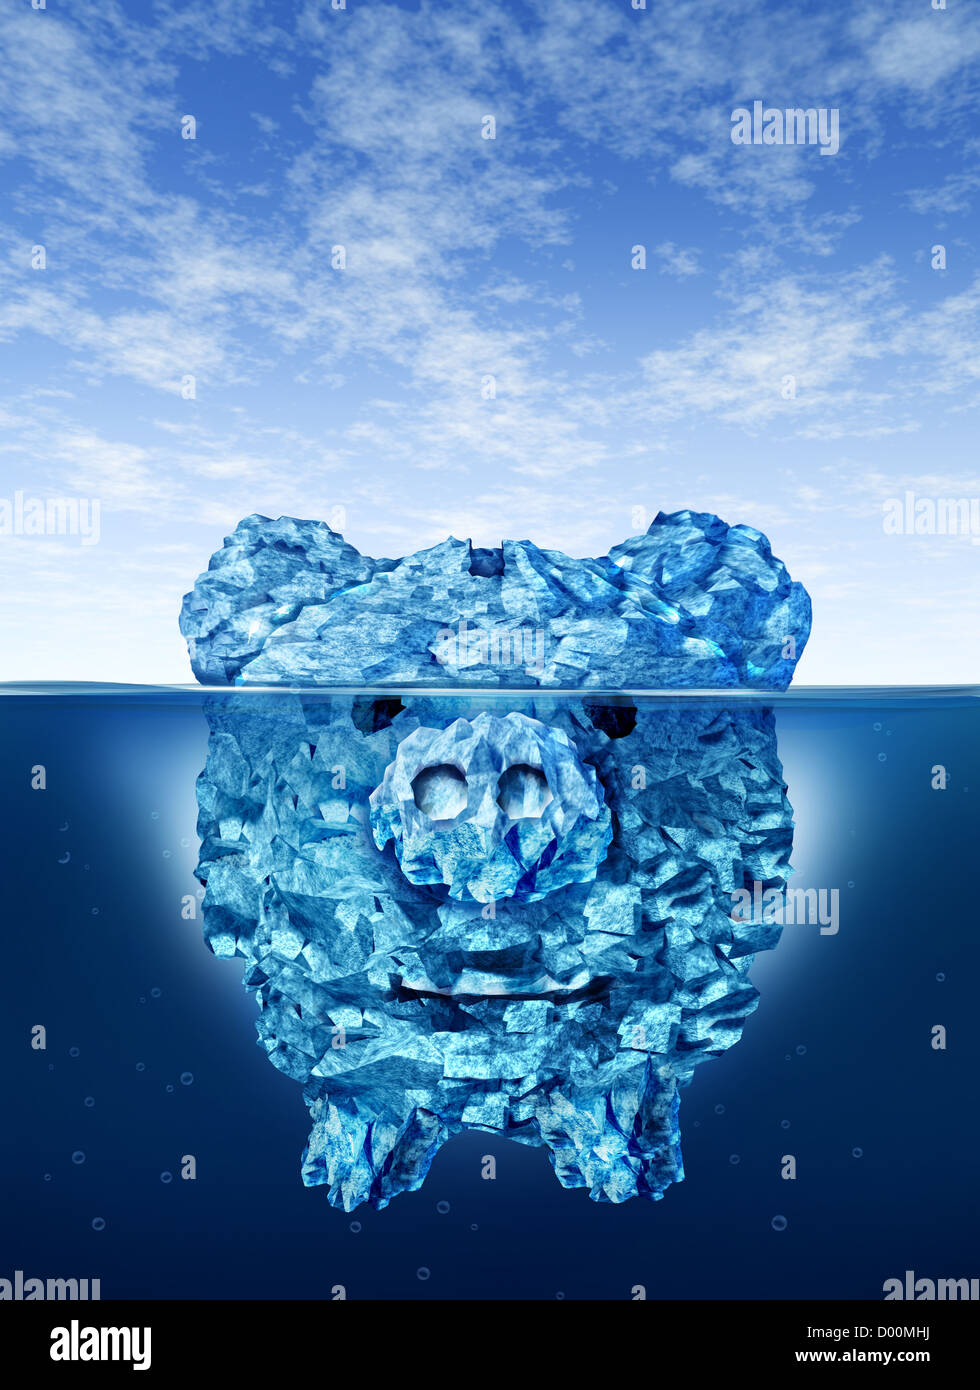 Einsparungen Risiko und Investition Geld Gefahren und Gefährdungen mit einem Eisberg in der Form ein Sparschwein mit einer trügerischen gefährliche Eis im kalten arktischen Wasser mit einem kleinen Teil von den gefrorenen Berg über dem Meer versteckt. Stockfoto